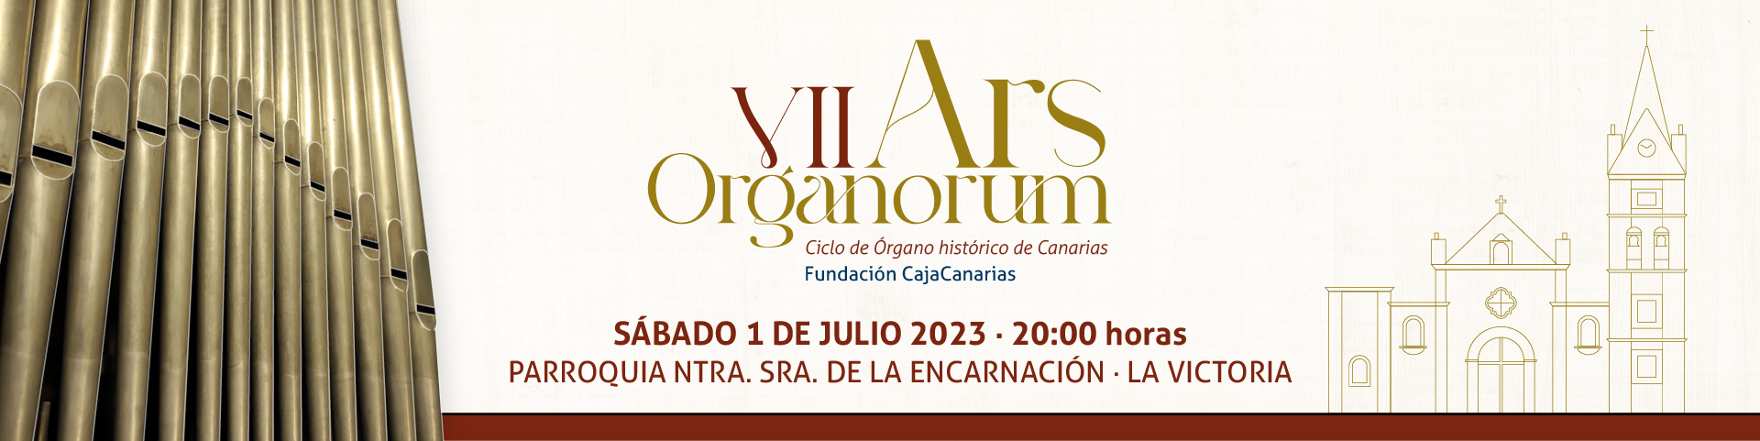 Conciertos - Ars Organorum - La Victoria - 1 de julio